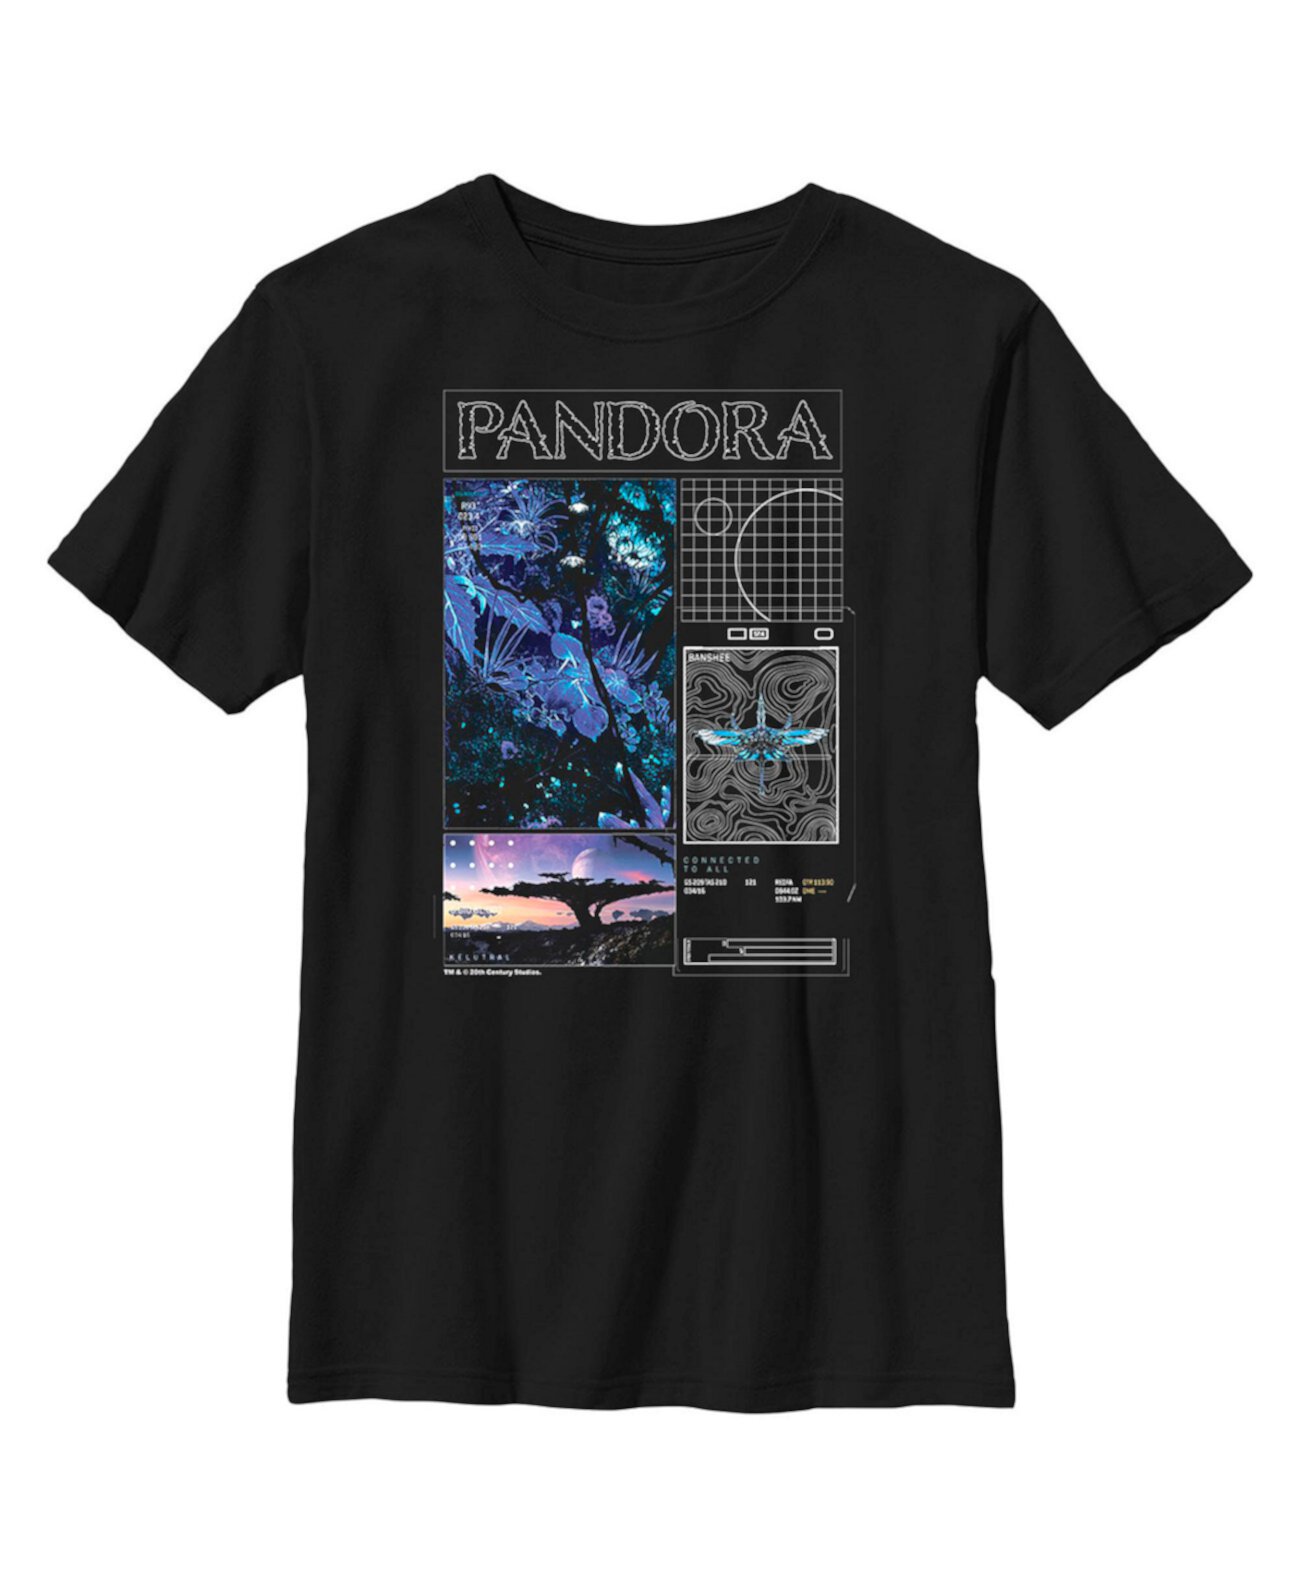 Детская футболка Avatar Pandora Diagrams для мальчиков 20th Century Fox